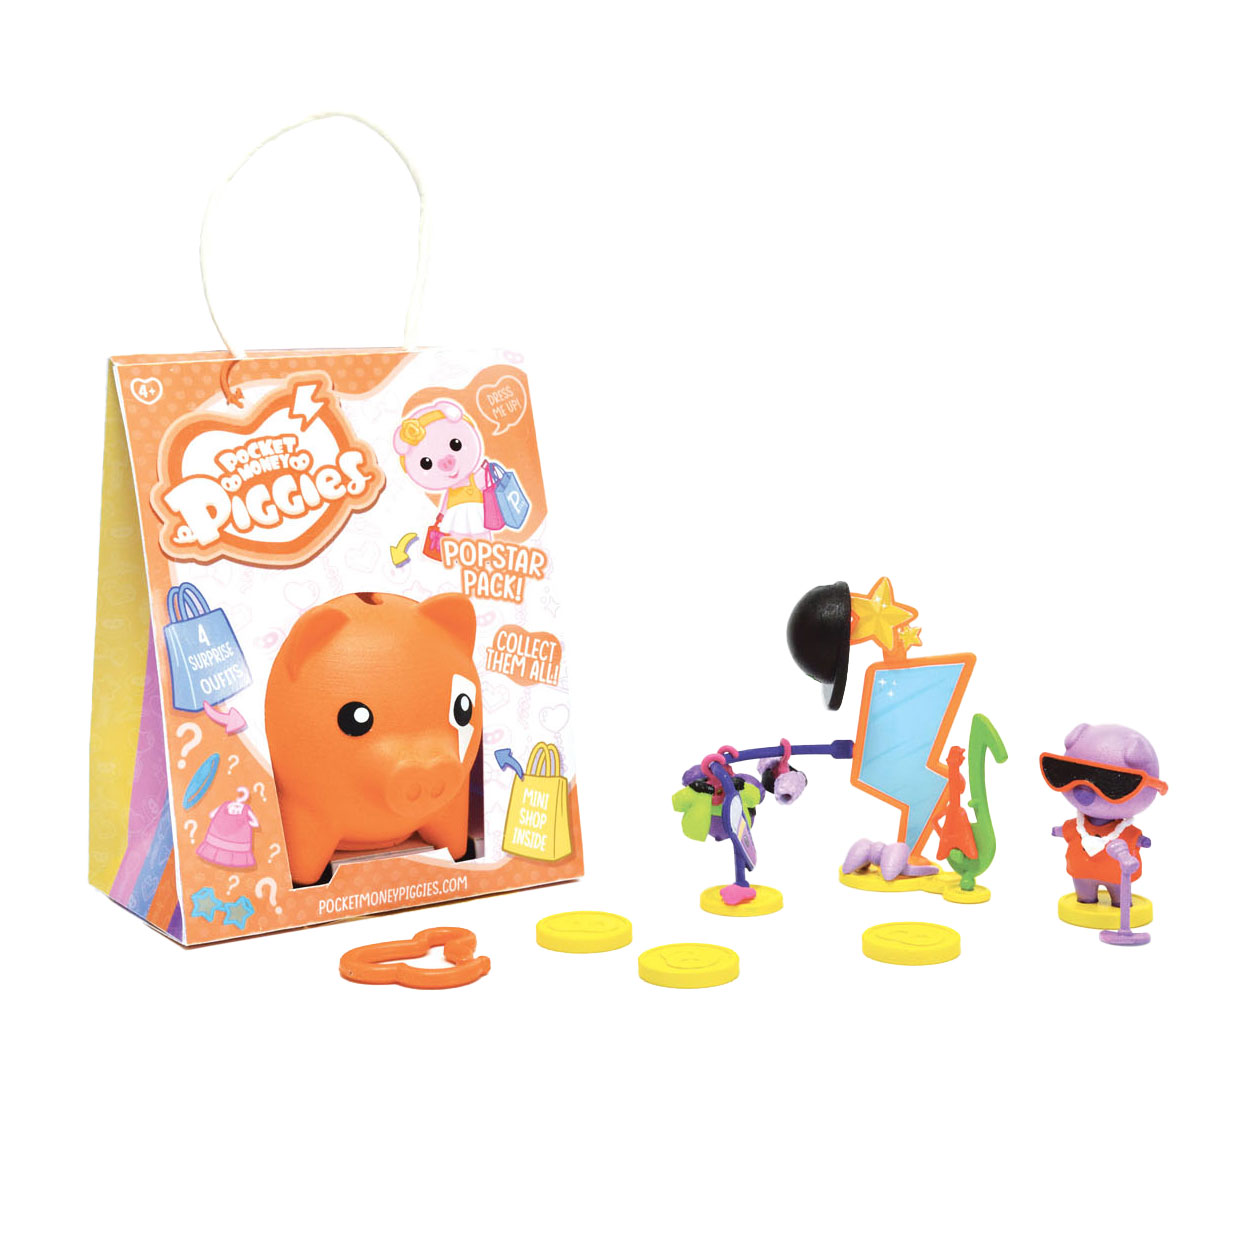 Pockey Money Piggies Spielfigur mit Spardose – Popstar-Paket